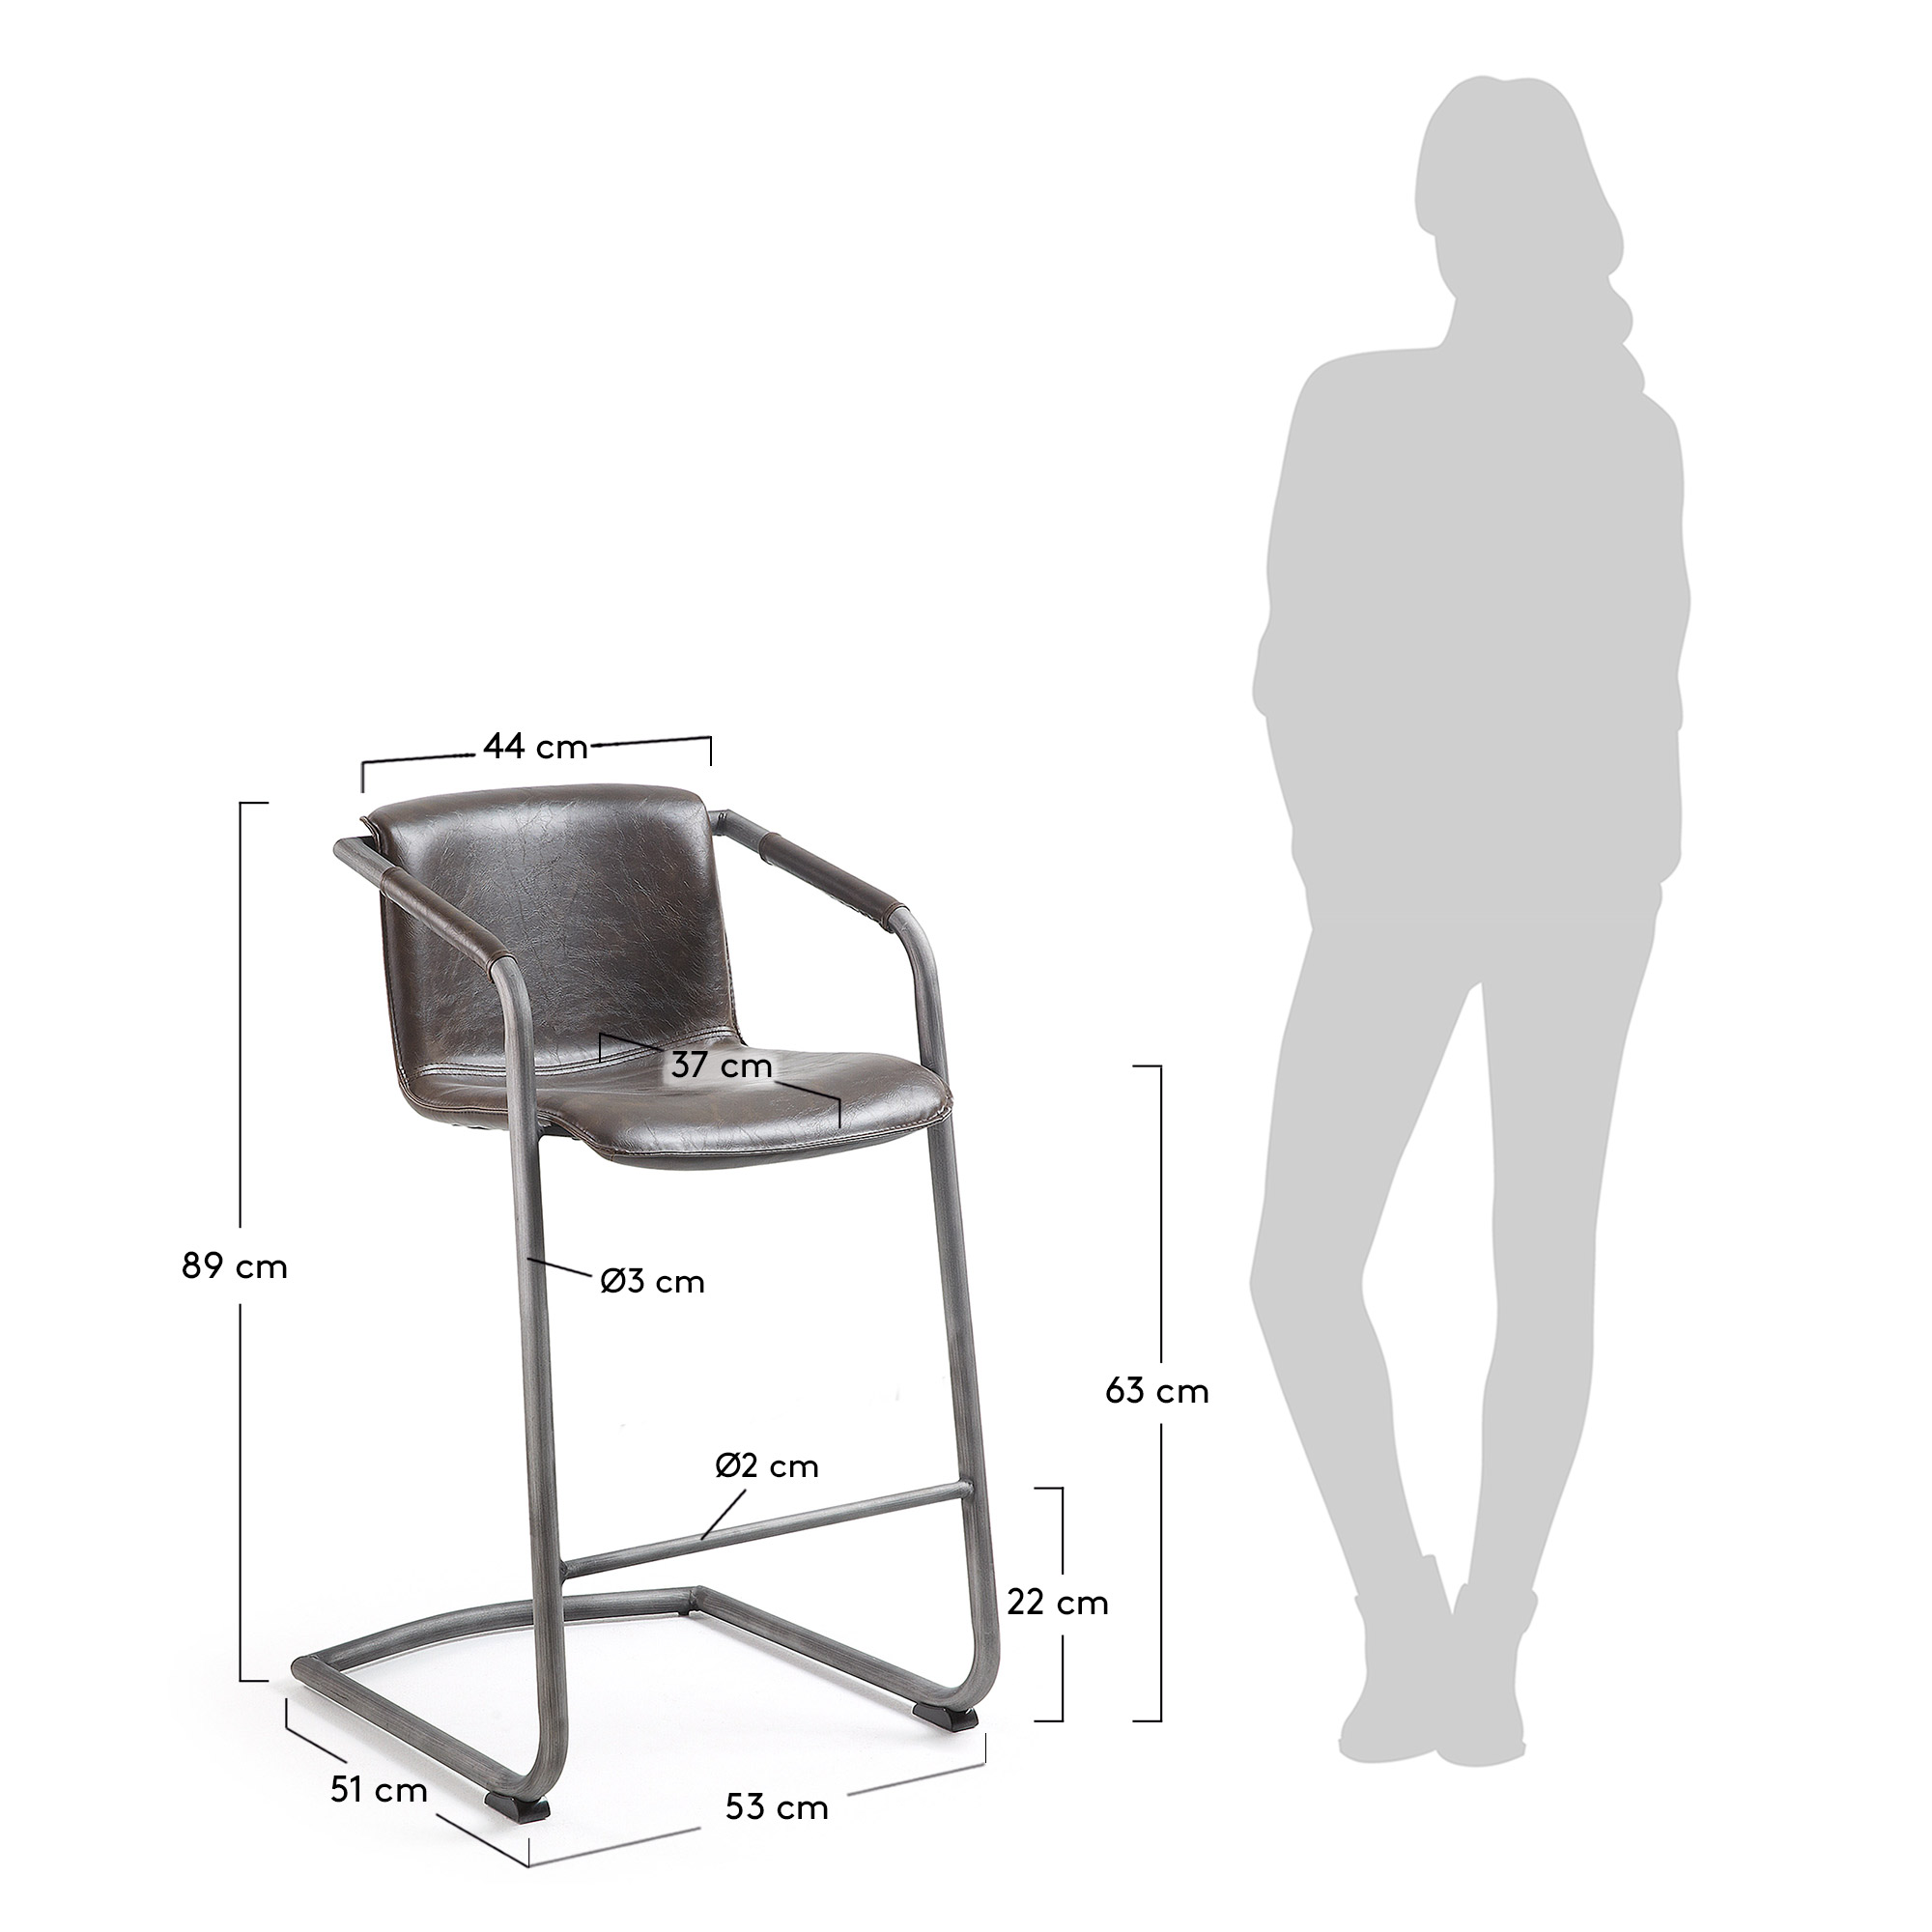 Стандарт высоты стула и стола